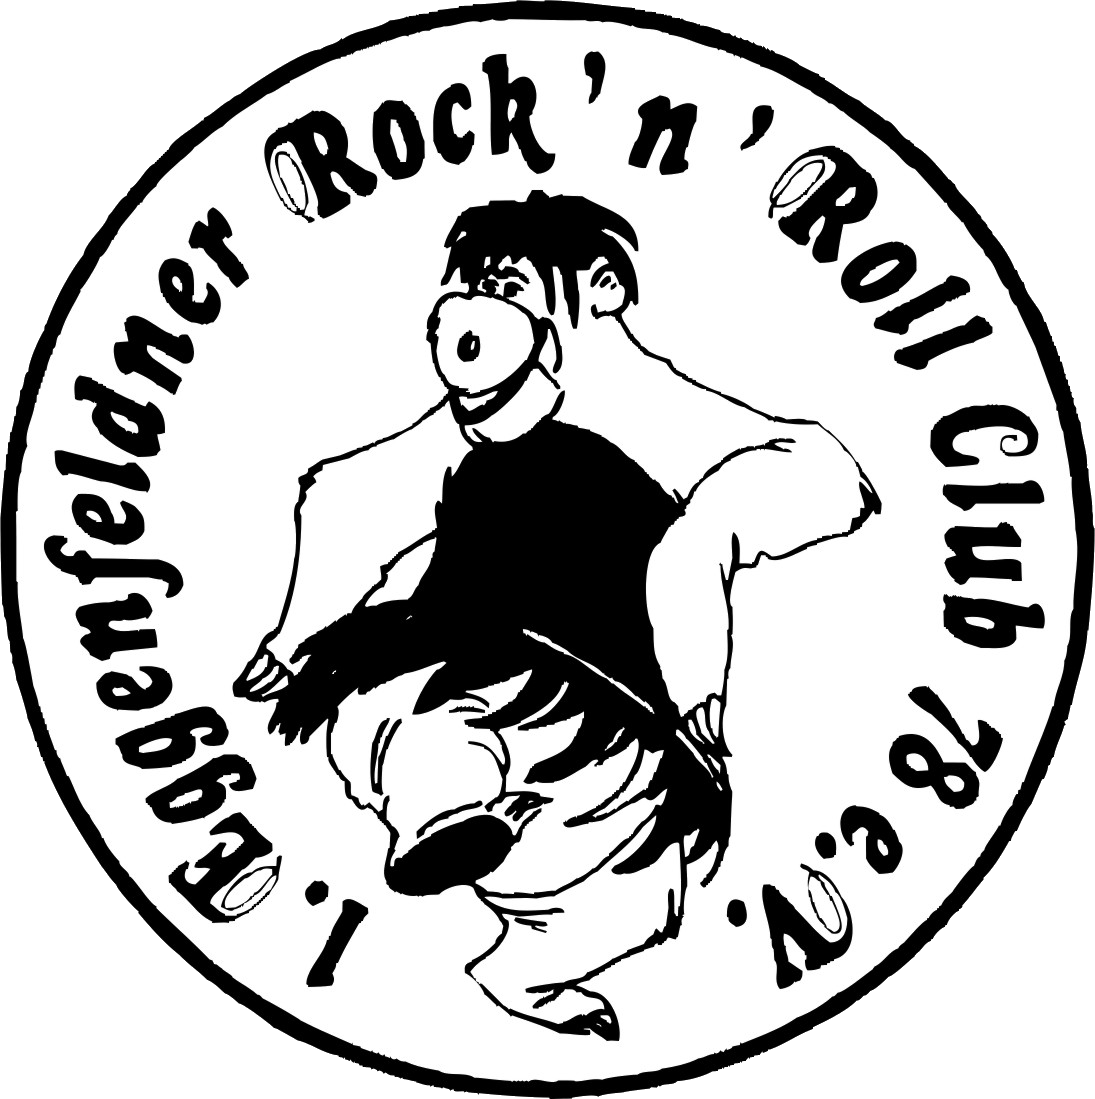 1. Eggenfeldner Rock